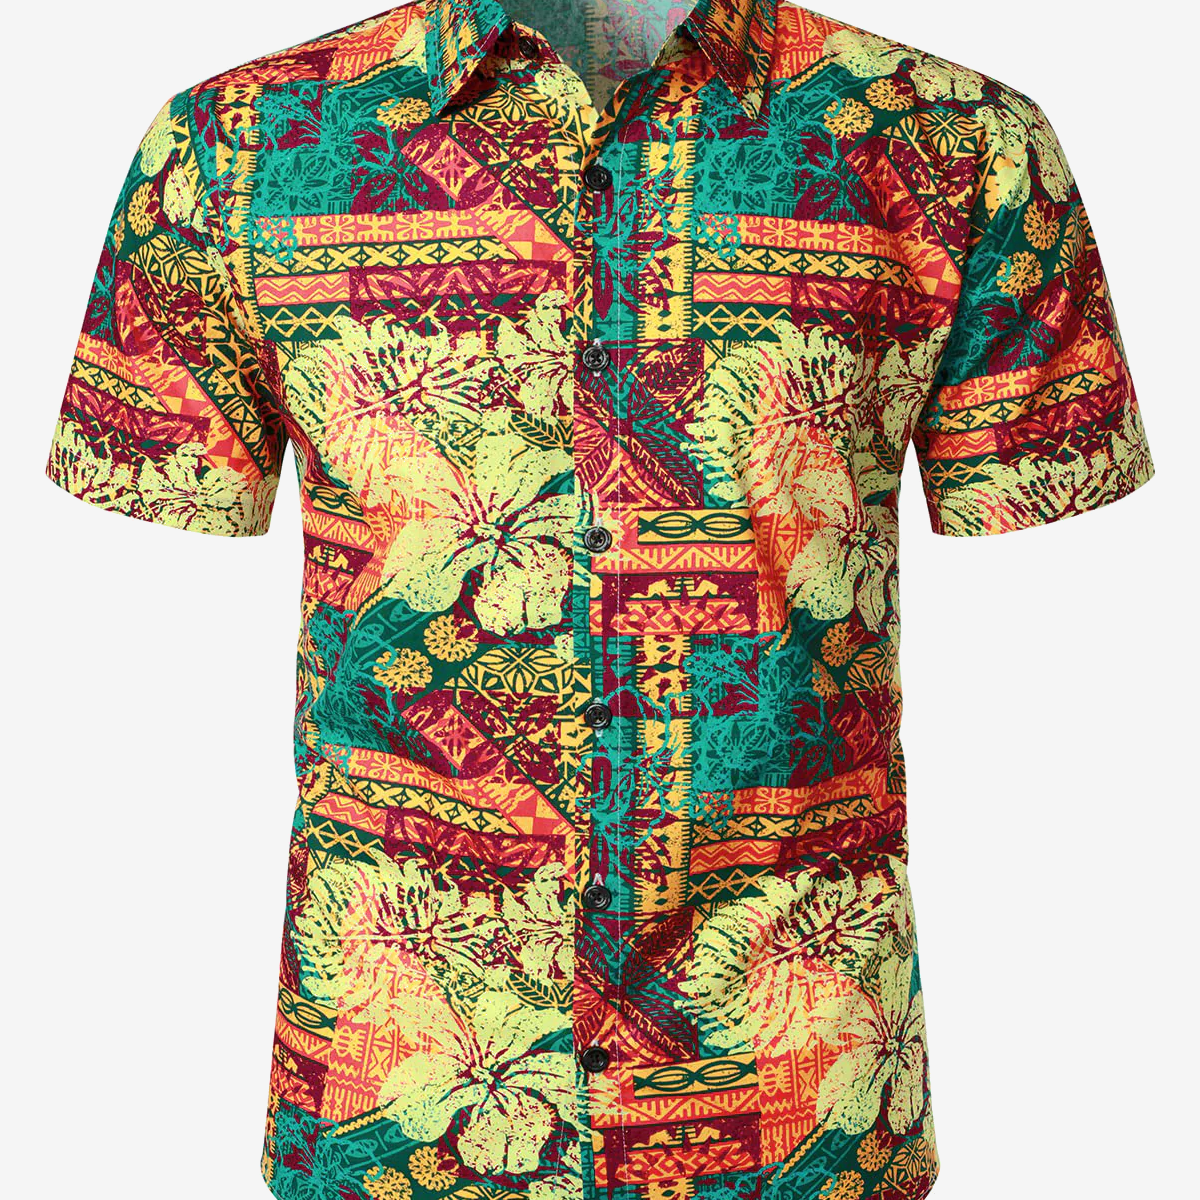 Camisa de manga corta con botones y estampado floral de hibisco de algodón hawaiano vintage para hombre